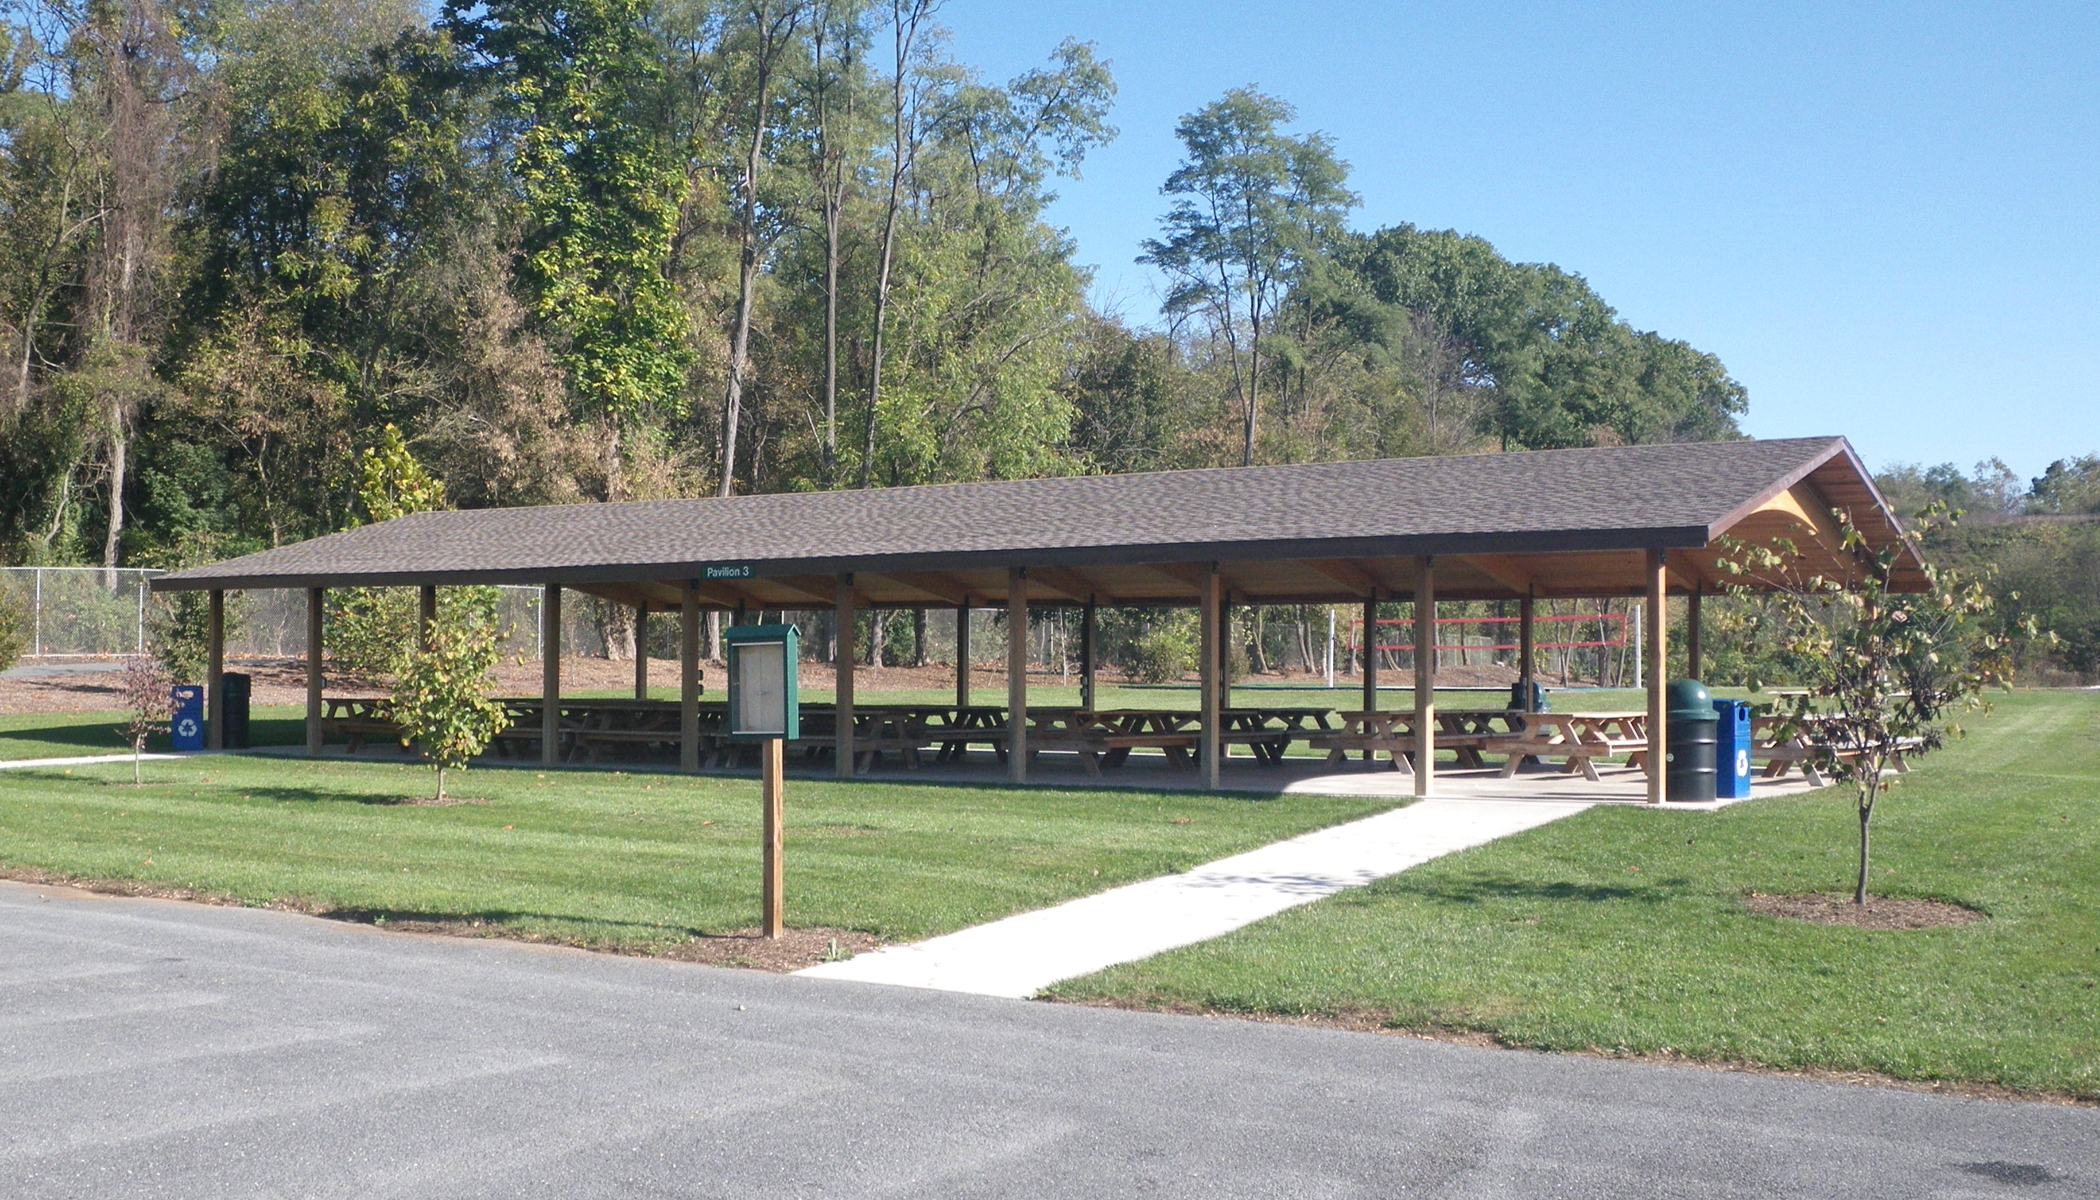 Pavilion 3